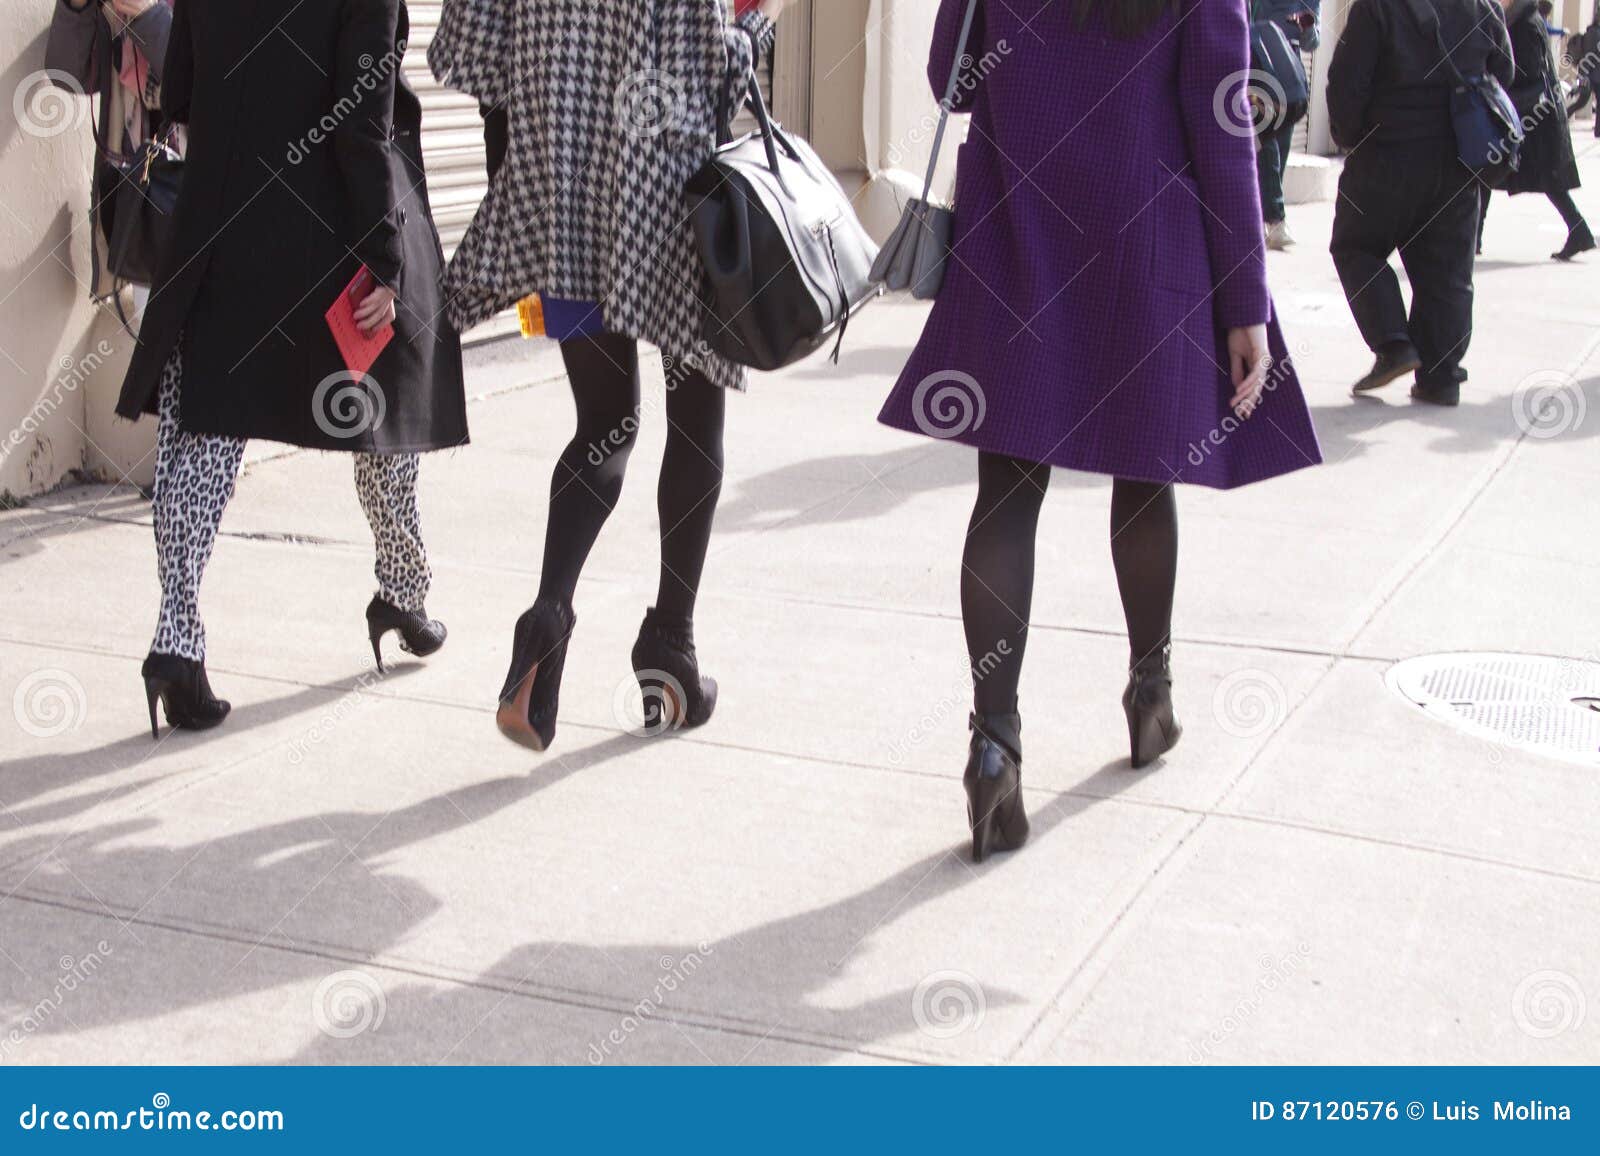 women walking in the city